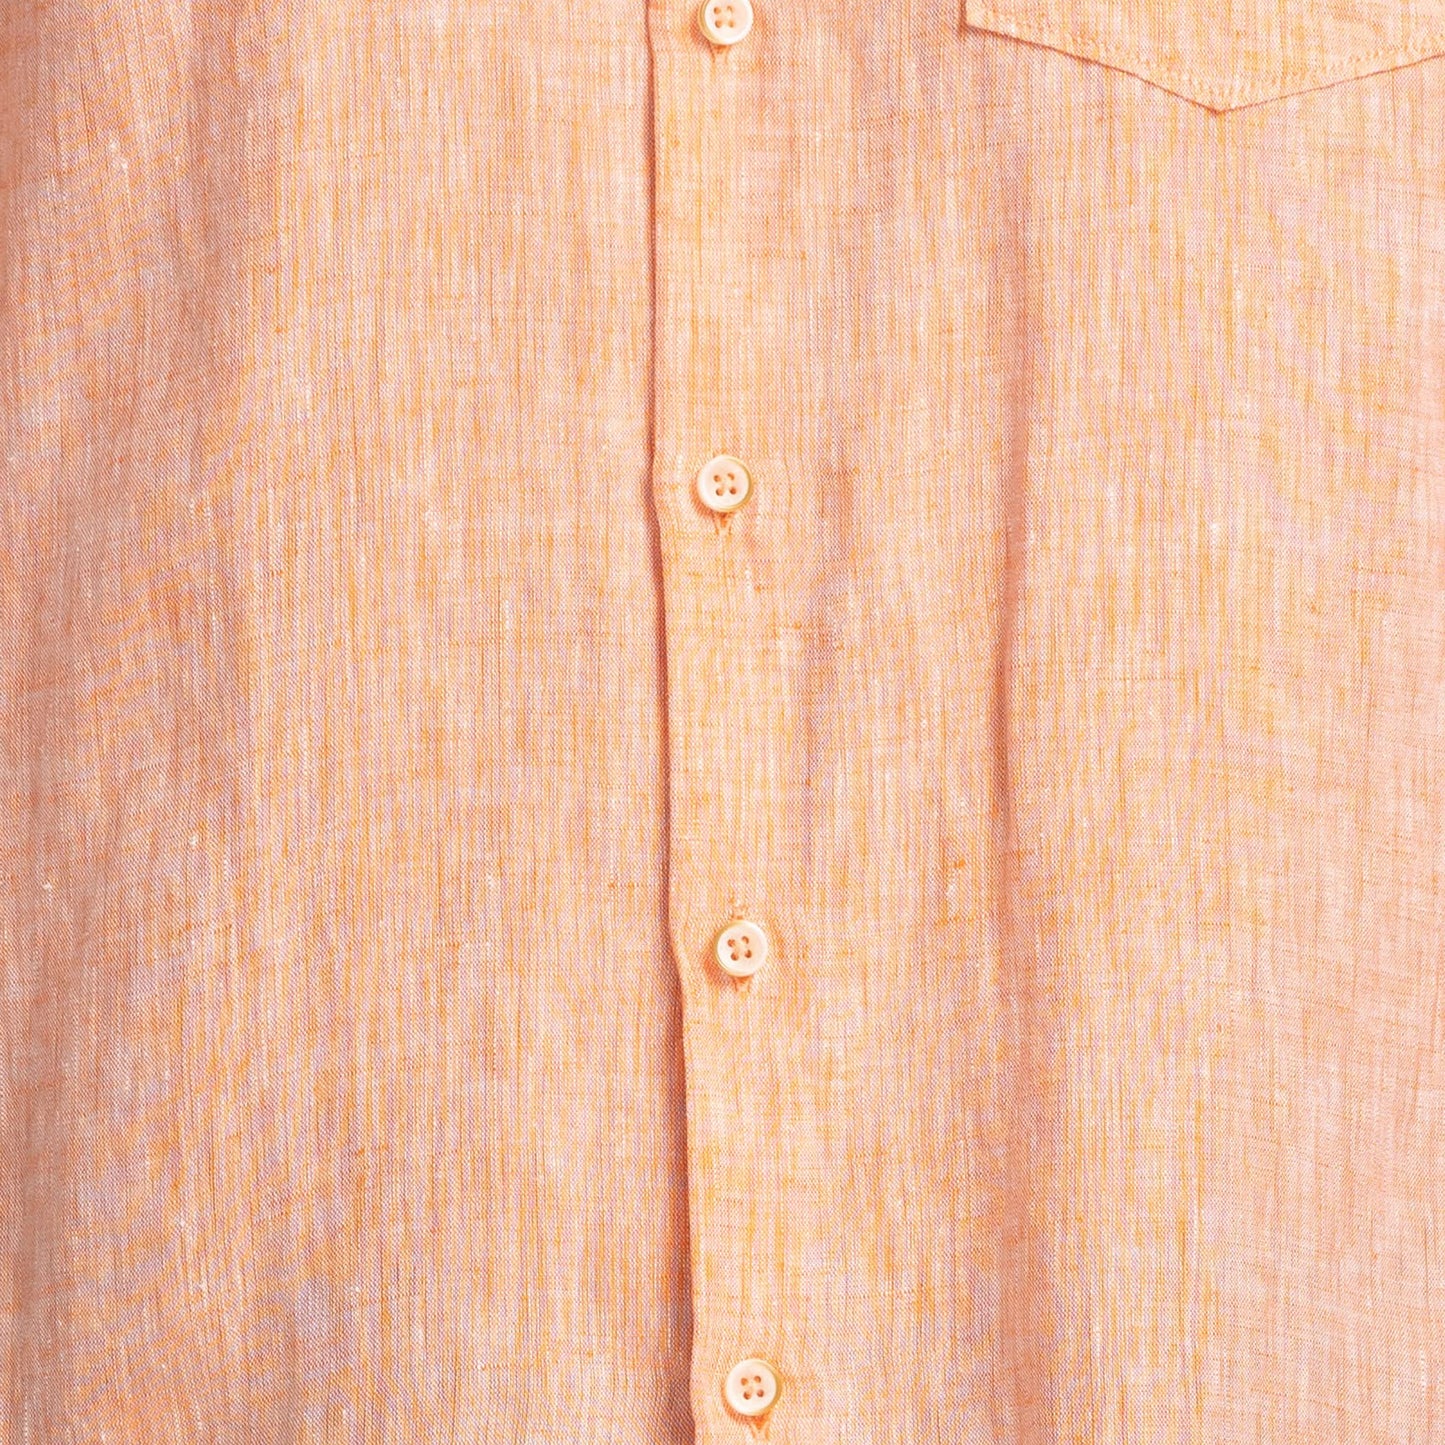 Park Avenue Slim Fit Medium Orange Casual Shirt for Men